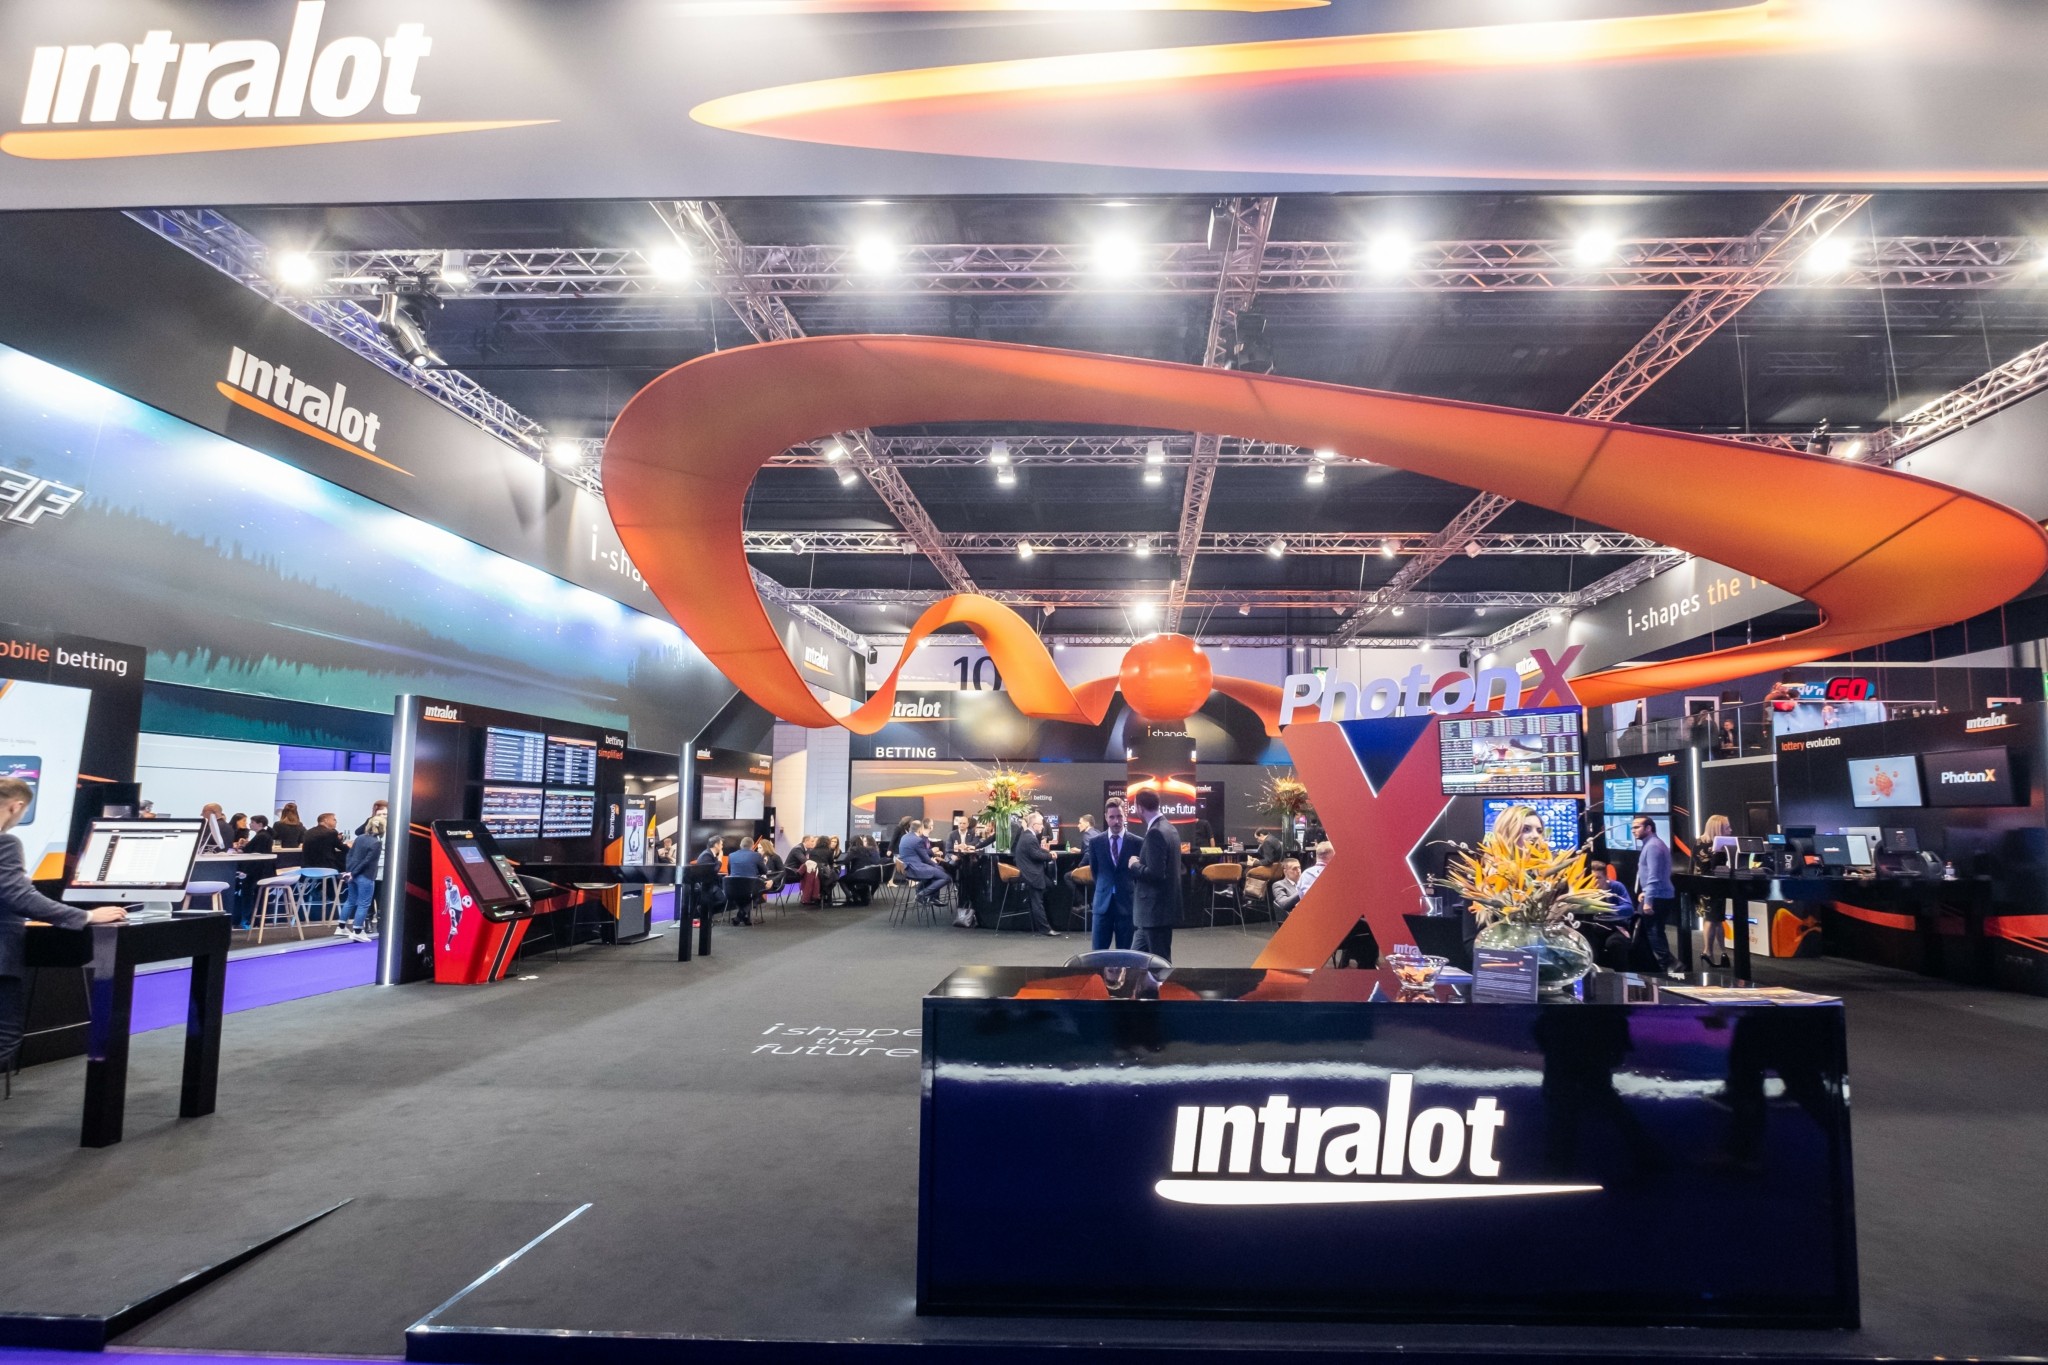 Η Intralot υπογράφει νέα 7ετή συμφωνία με τη Magnum Corporation στη Μαλαισία